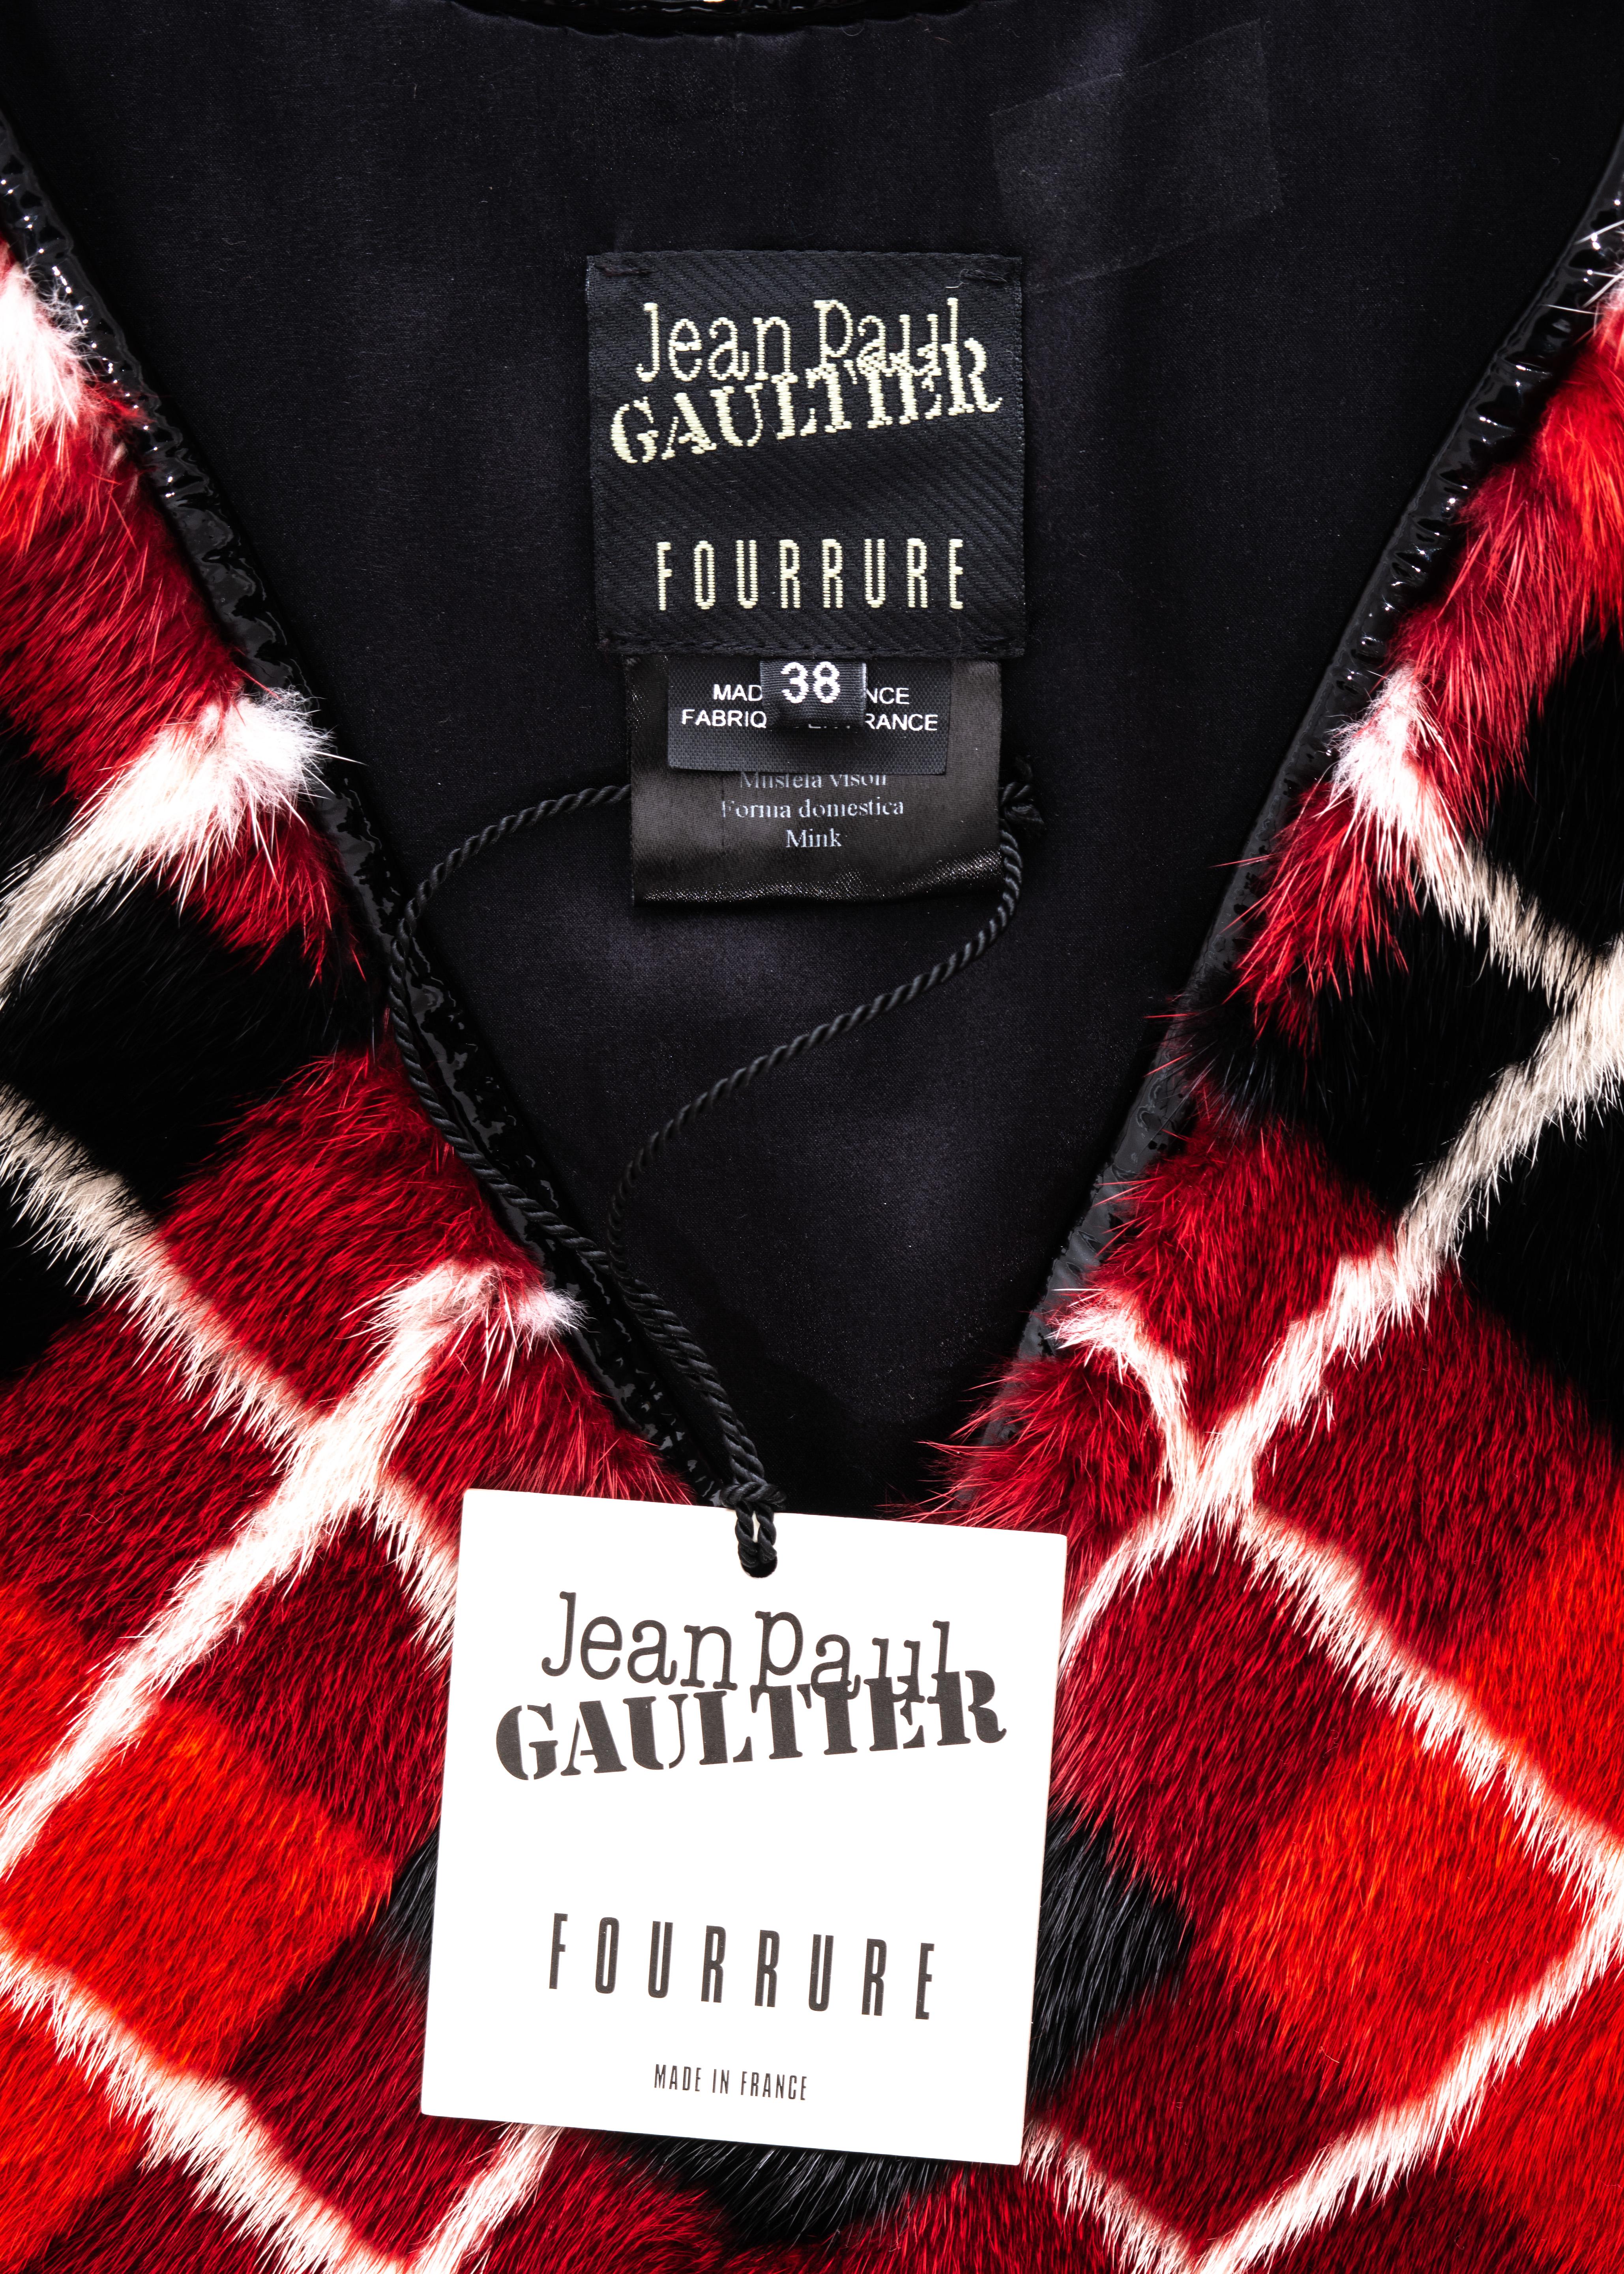 Jean Paul Gaultier red argyle print mink fur vest, fw 2007 4